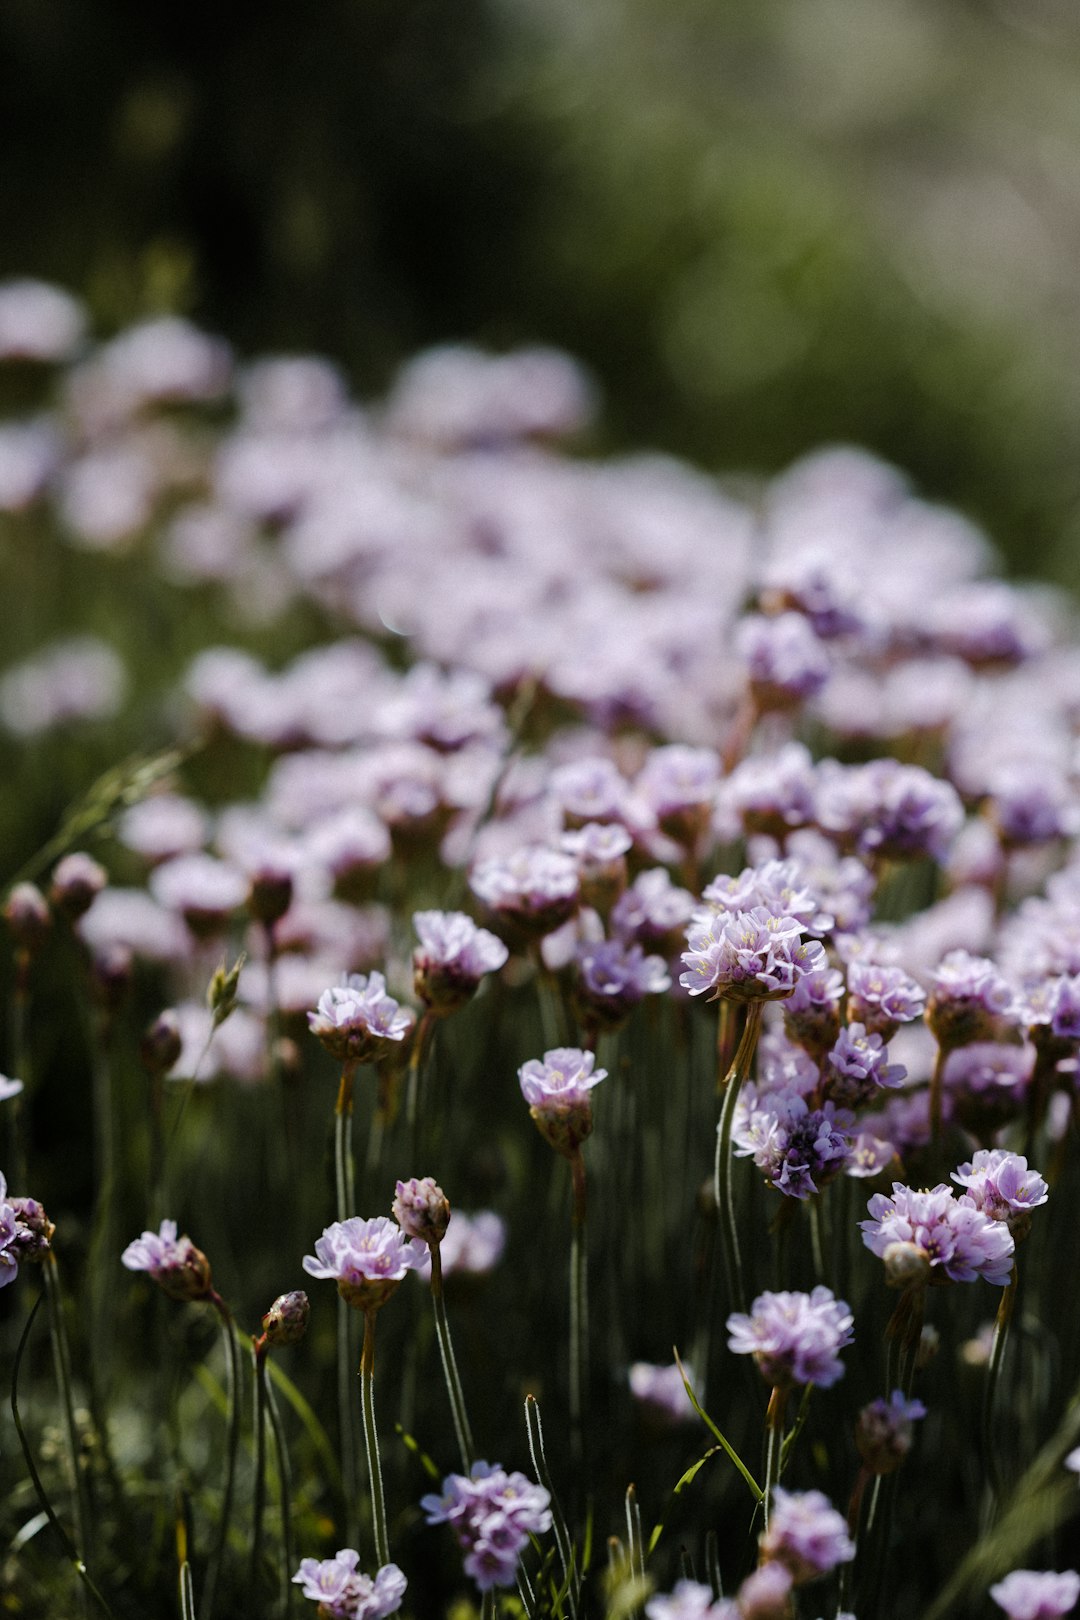 white and purple flowers in tilt shift lens